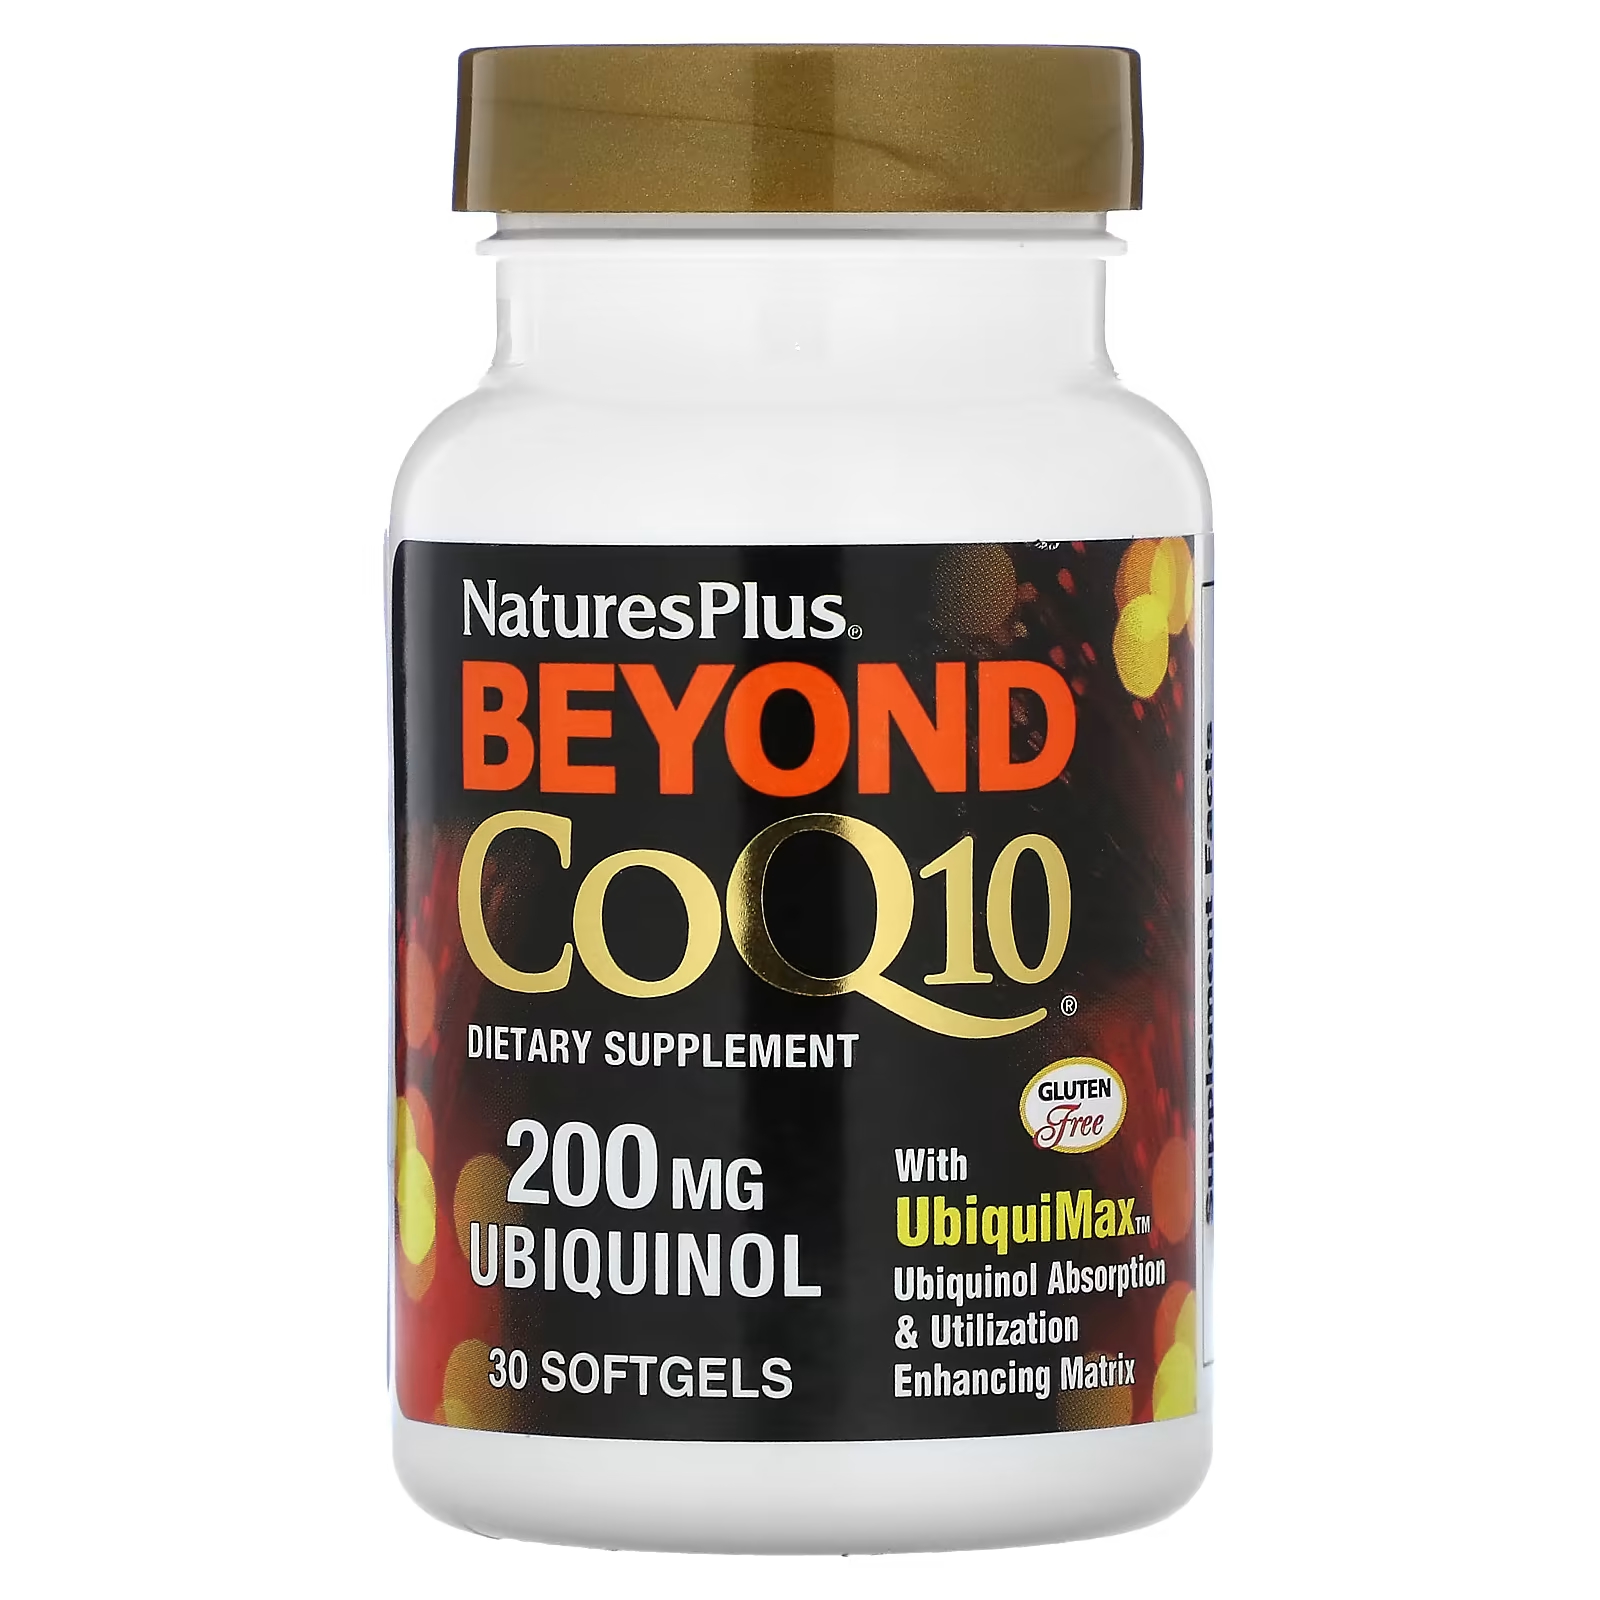 Пищевая добавка NaturesPlus Beyond CoQ10, 200 мг, 30 мягких таблеток цинк 50 мг иммунная поддержка и антиоксидантная добавка добавка для улучшения мольности спермы повышения количества и эякуляции